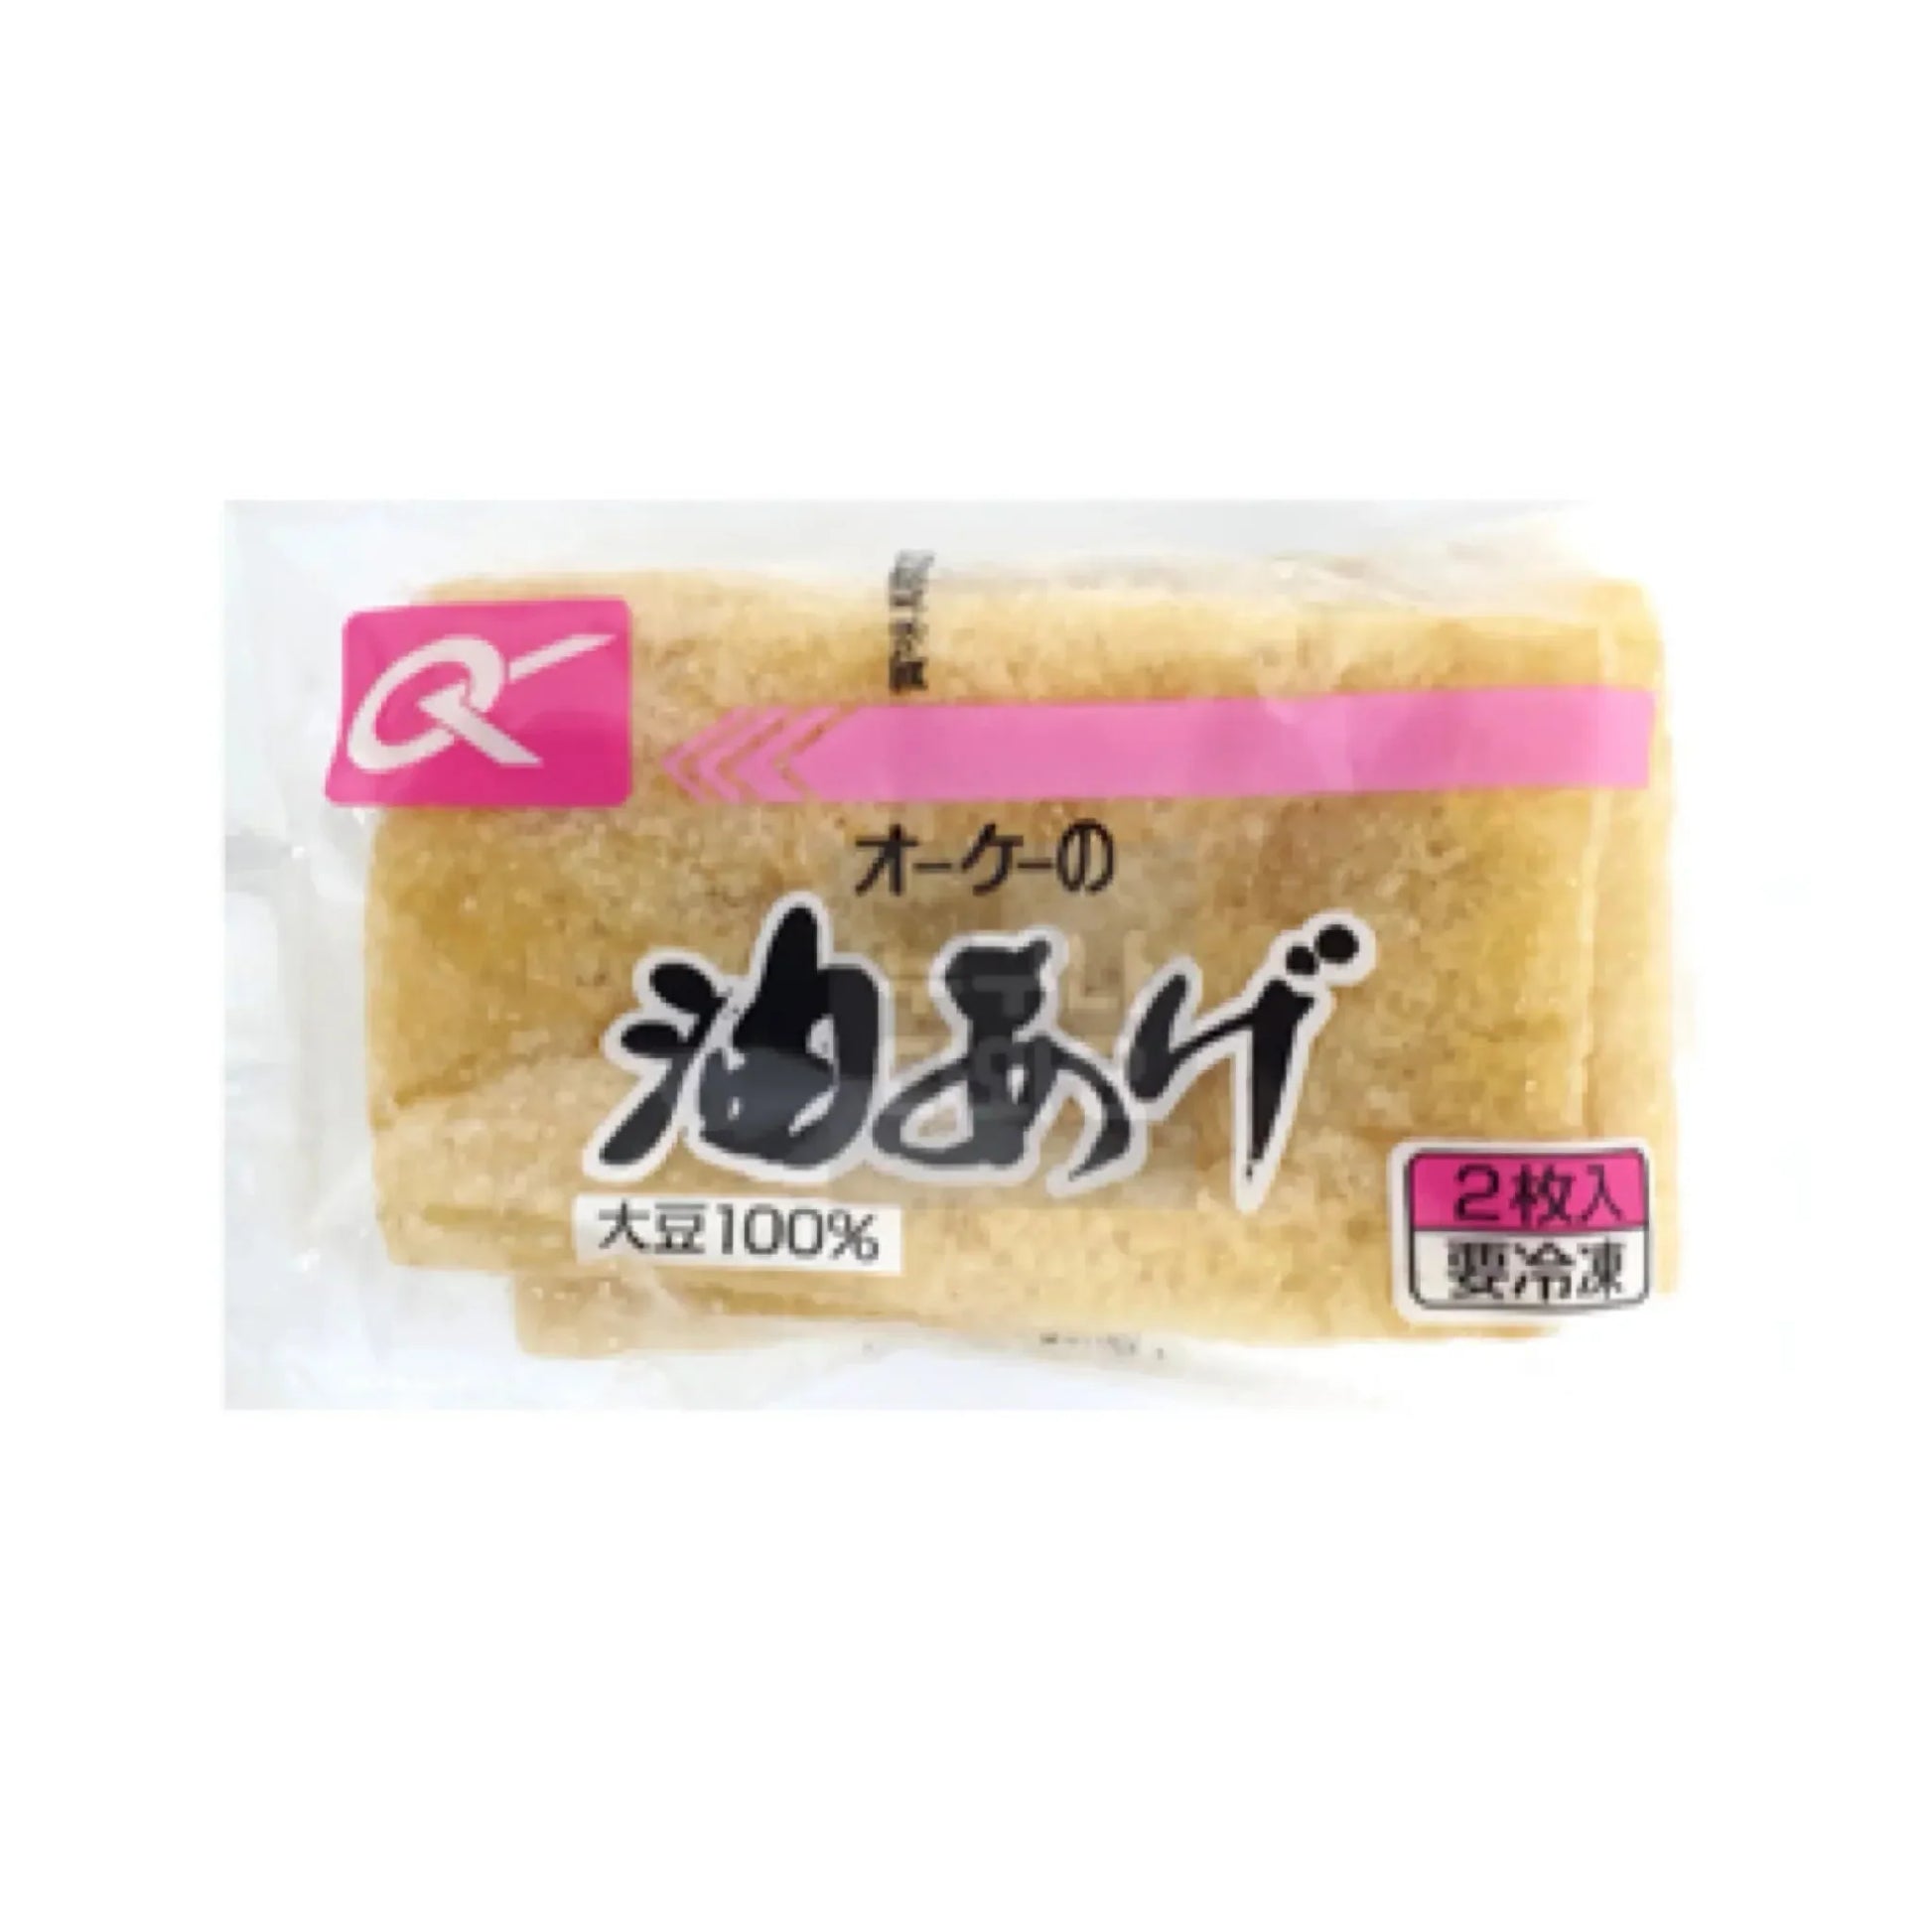 Aburaage 2pc- Tofu Frito 40g Loja Japonesa Goyo-Ya 